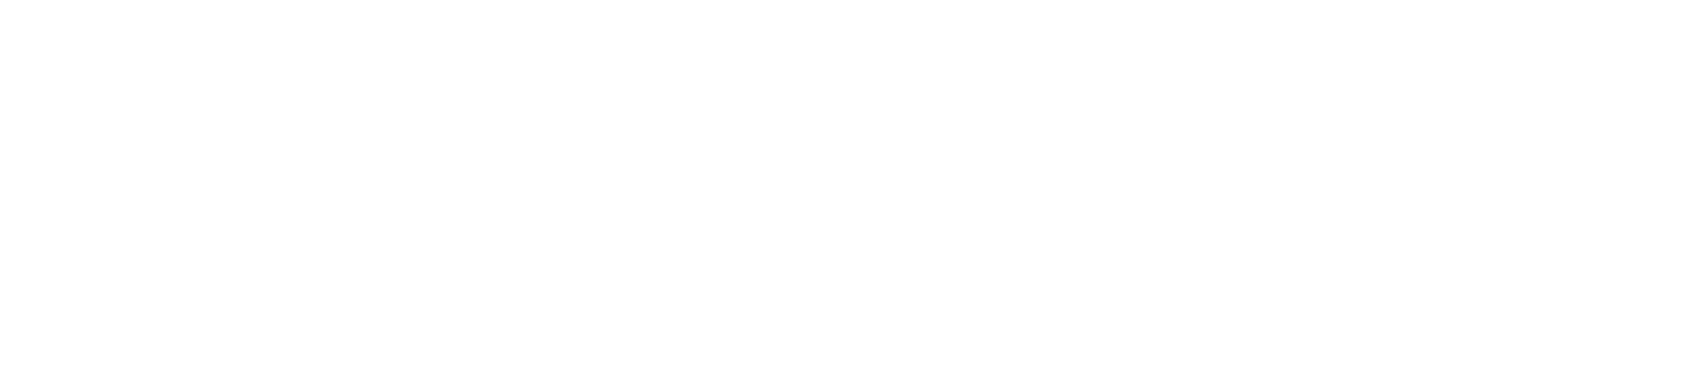 SOFERBAT FERMETURES INDUSTRIELLES Clermont-Fd Puy-de-dôme